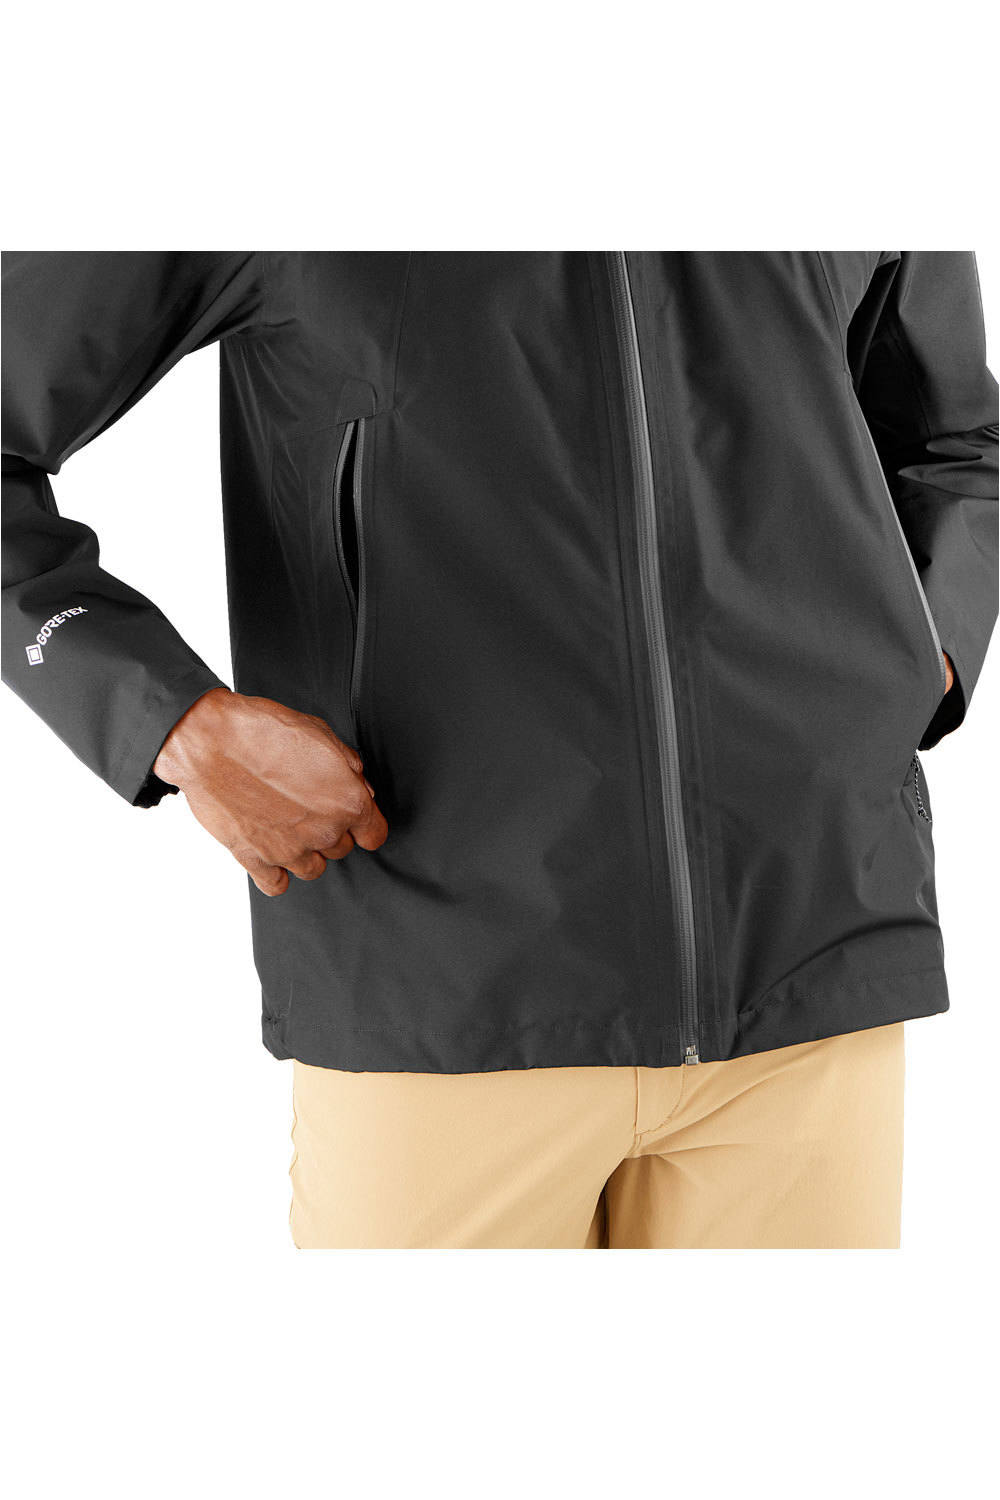 Salomon chaqueta impermeable hombre OUTLINE GORE-TEX  2.5 LAYERS 03